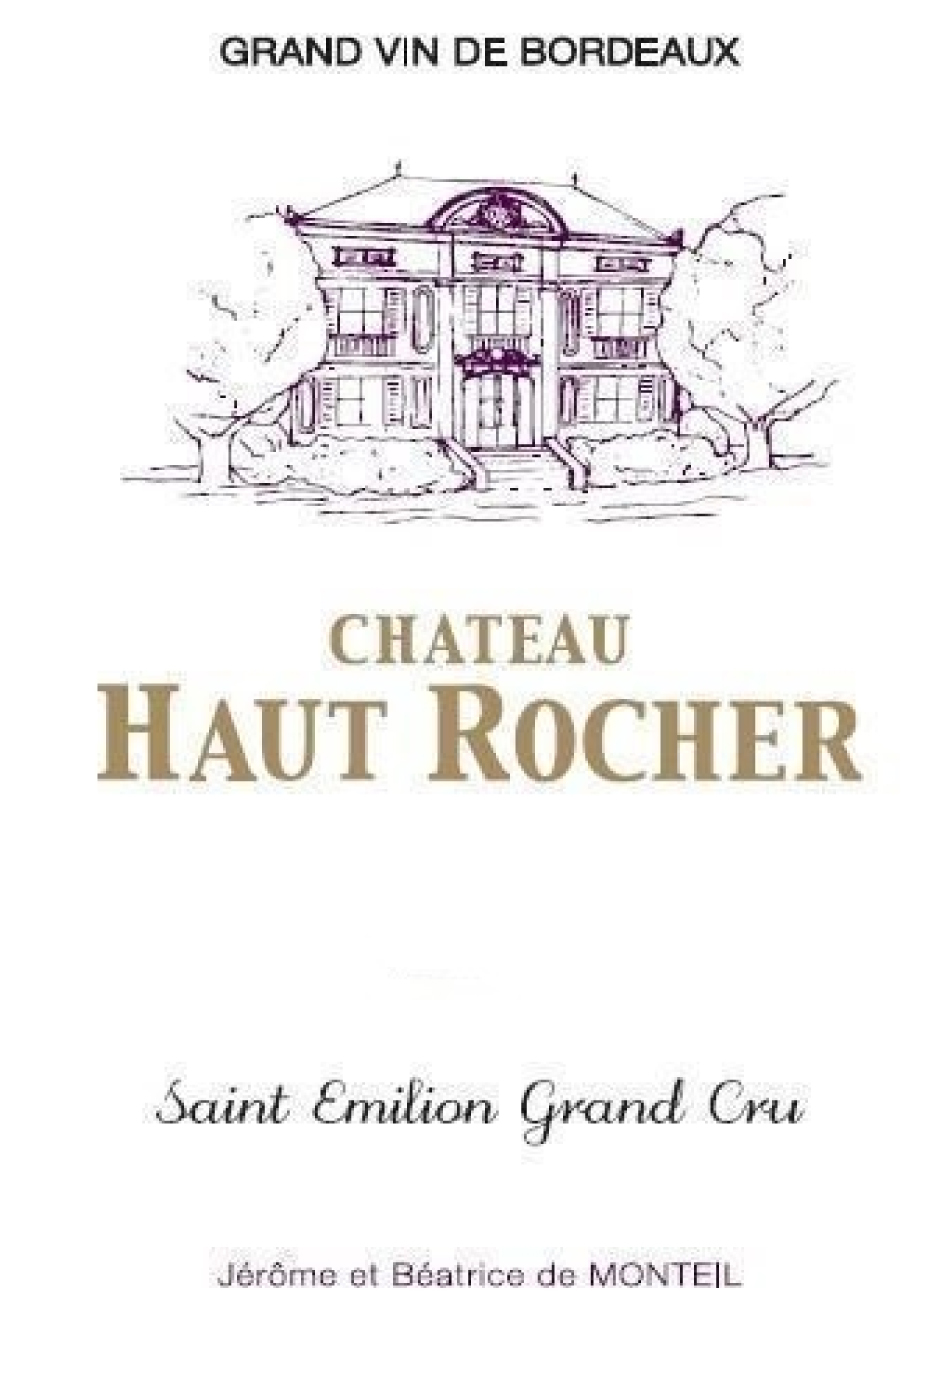 Chateau Haut Rocher label